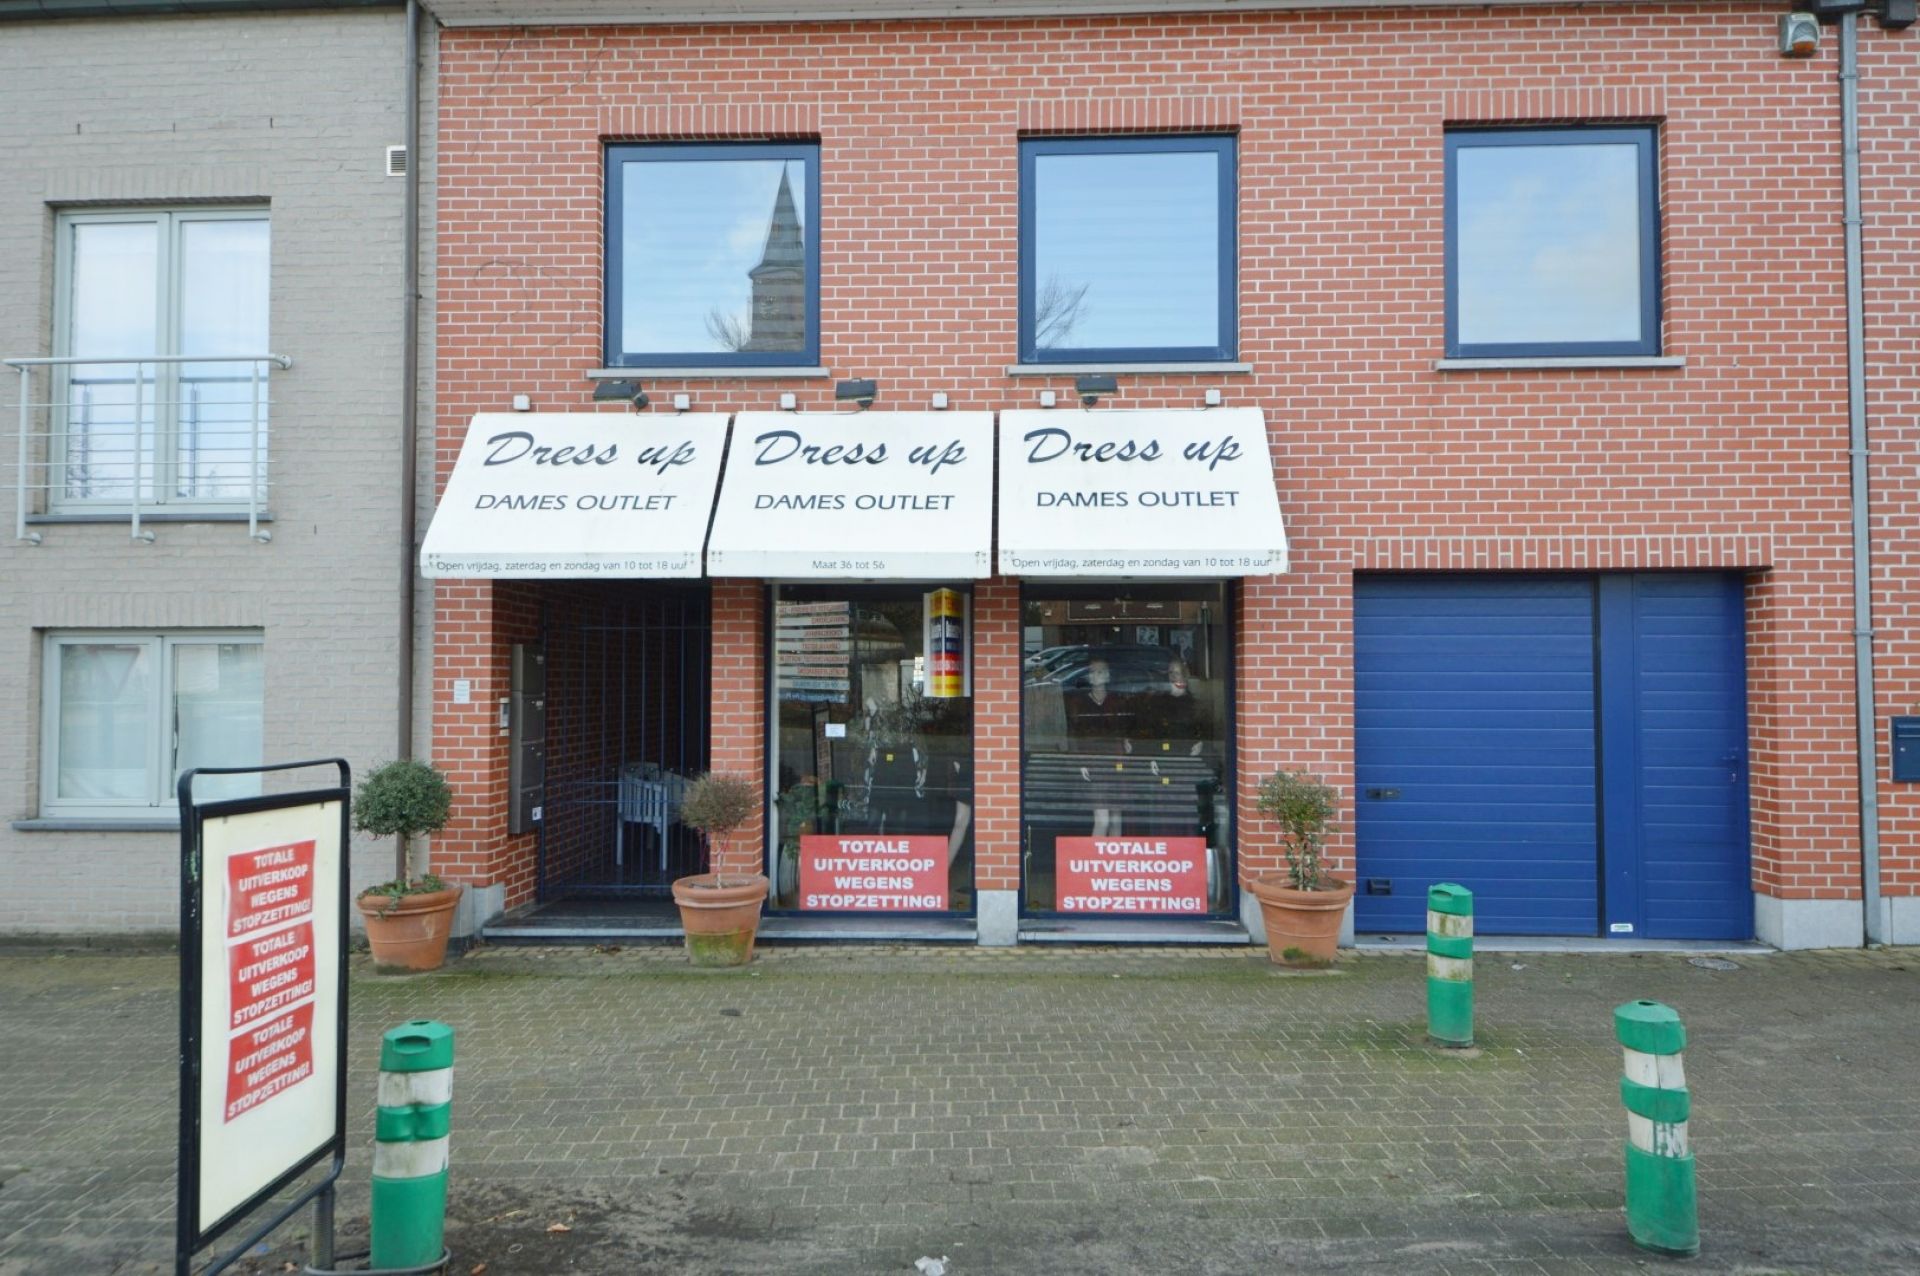 Denderwindeke